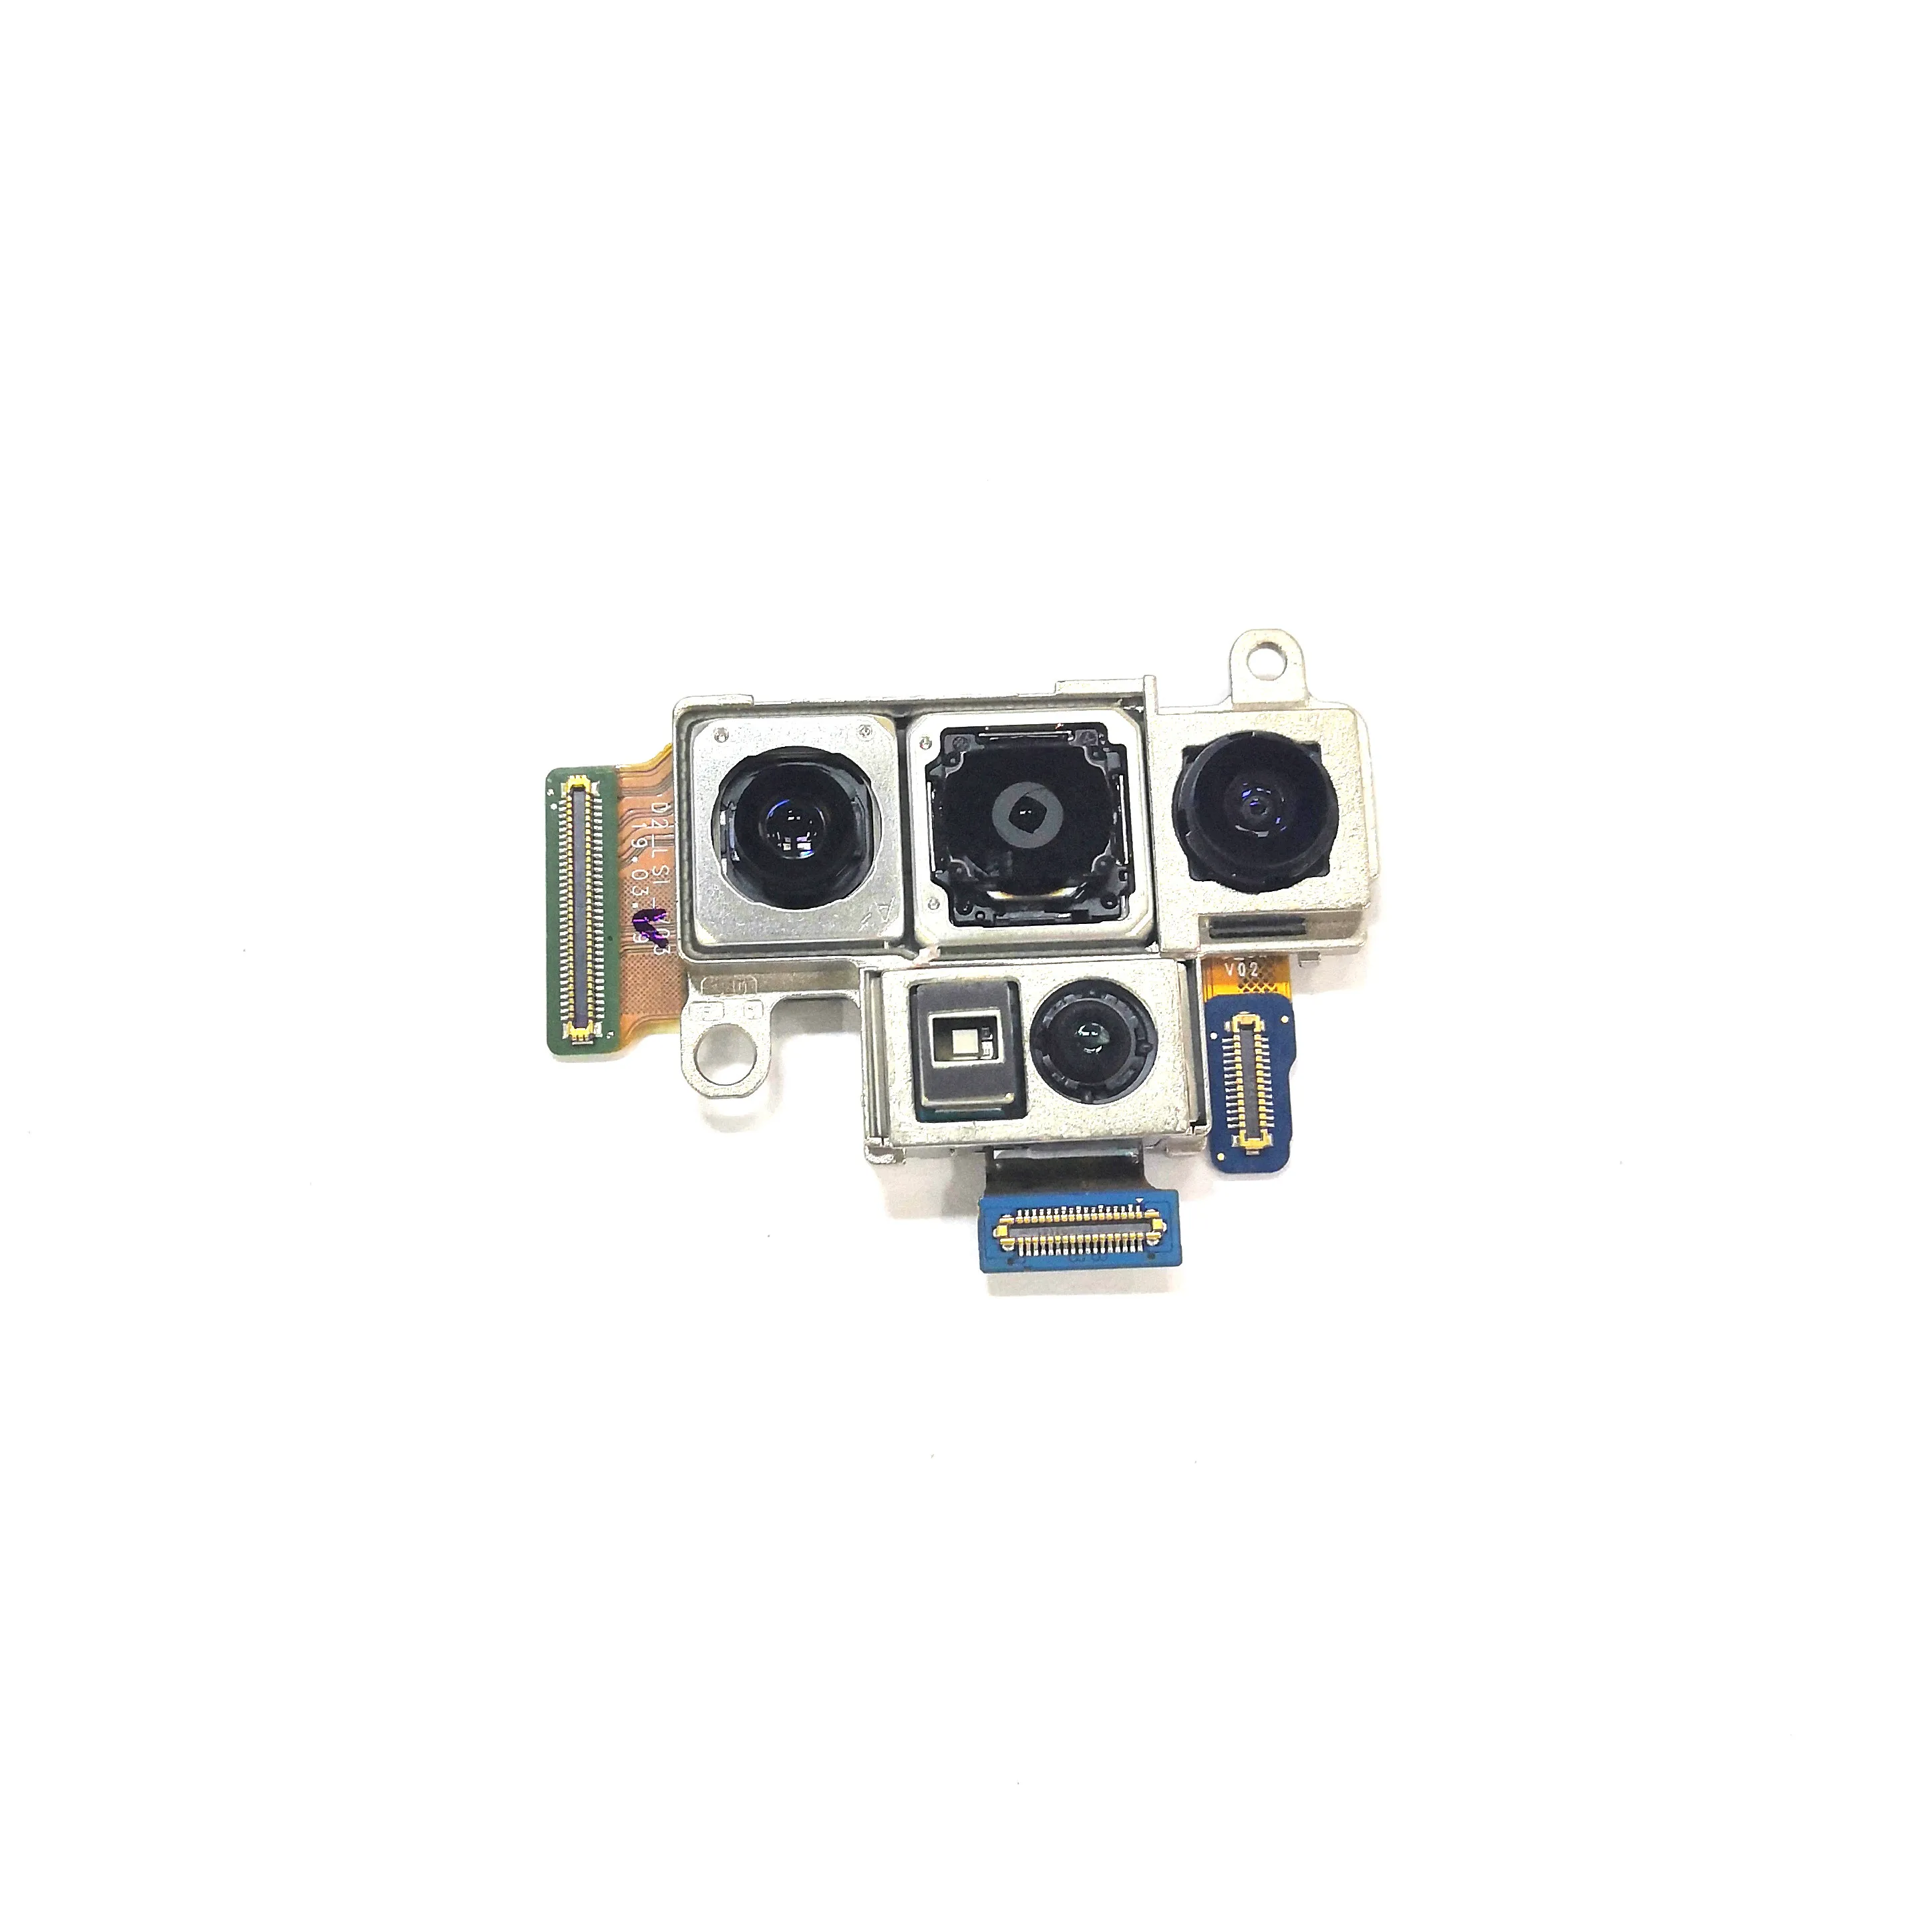 New original Back Rear Camera Module Part for Samsung Galaxy Note 10 Plus N975U N975F